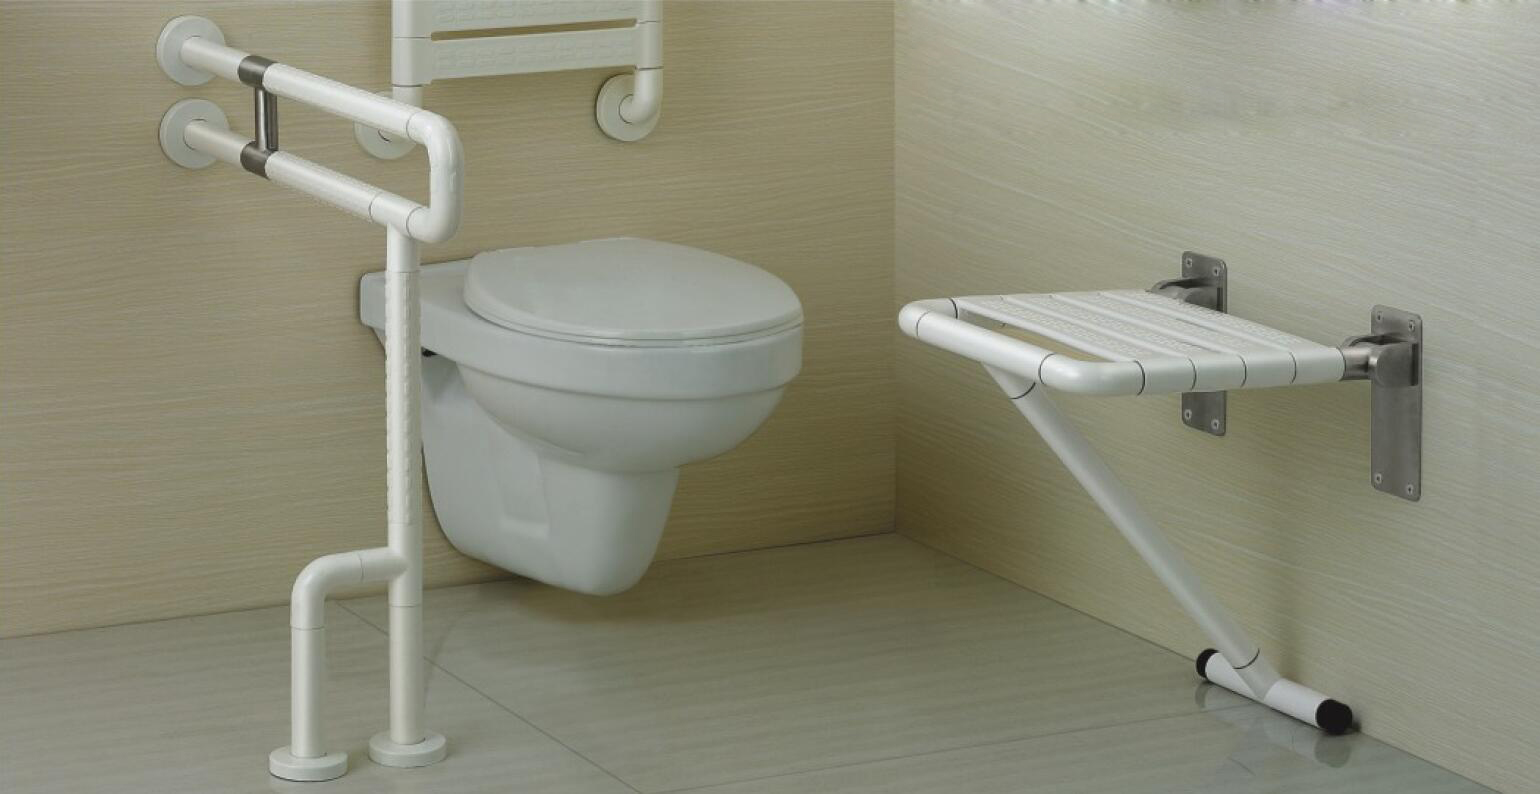 Vilka är anledningarna till populariteten för vägghängda toaletter?